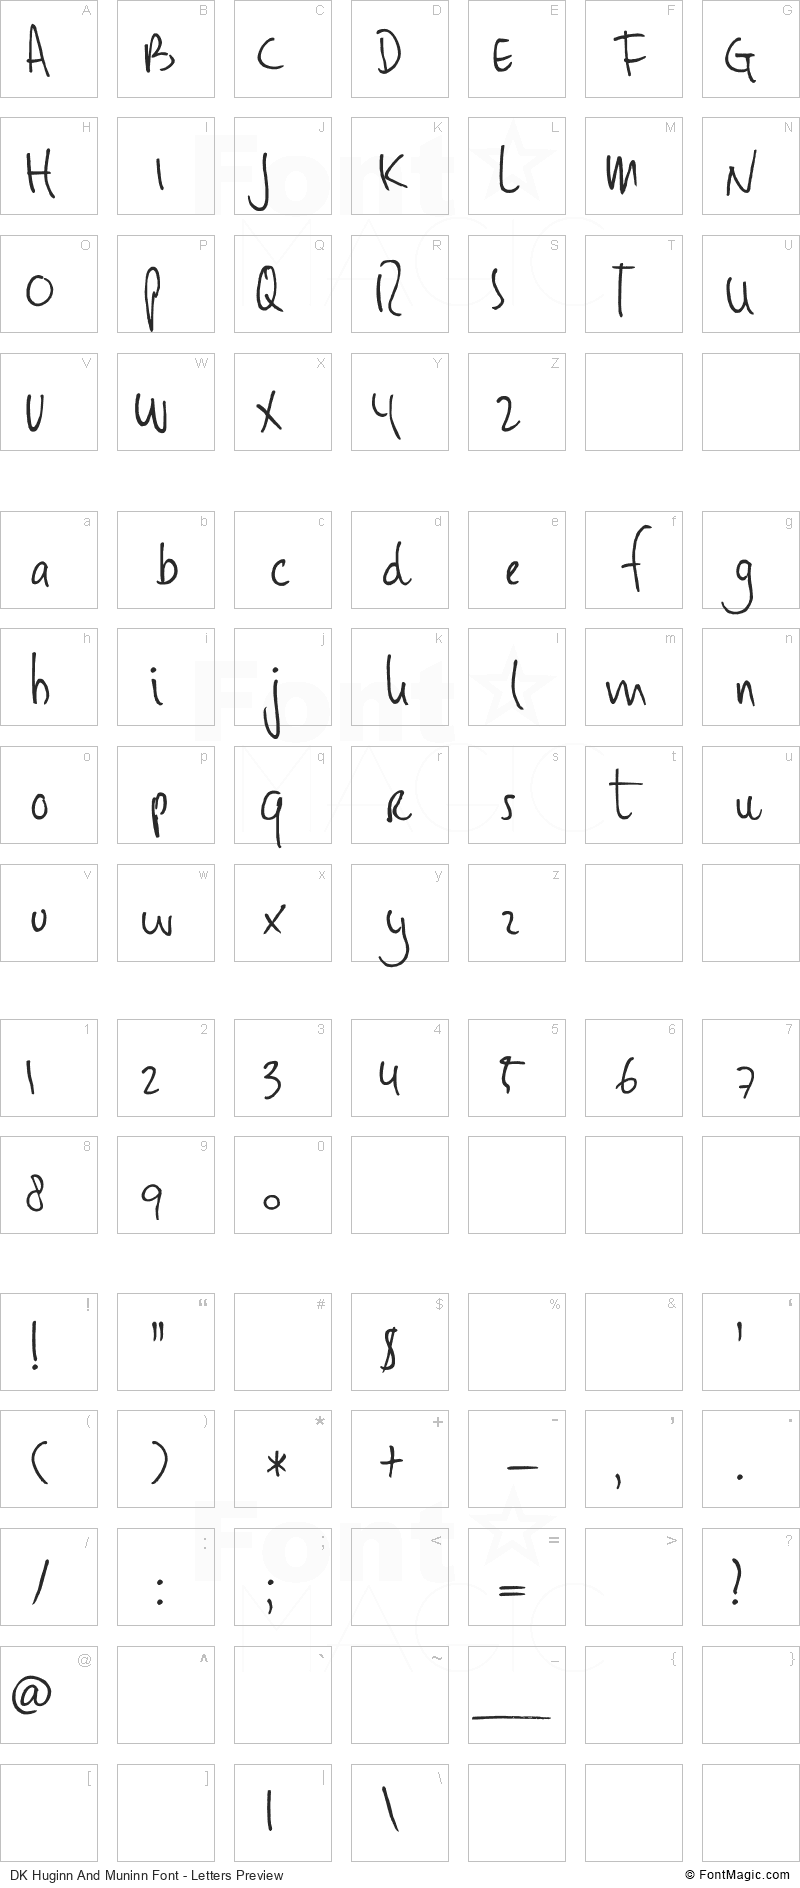 DK Huginn And Muninn Font - All Latters Preview Chart